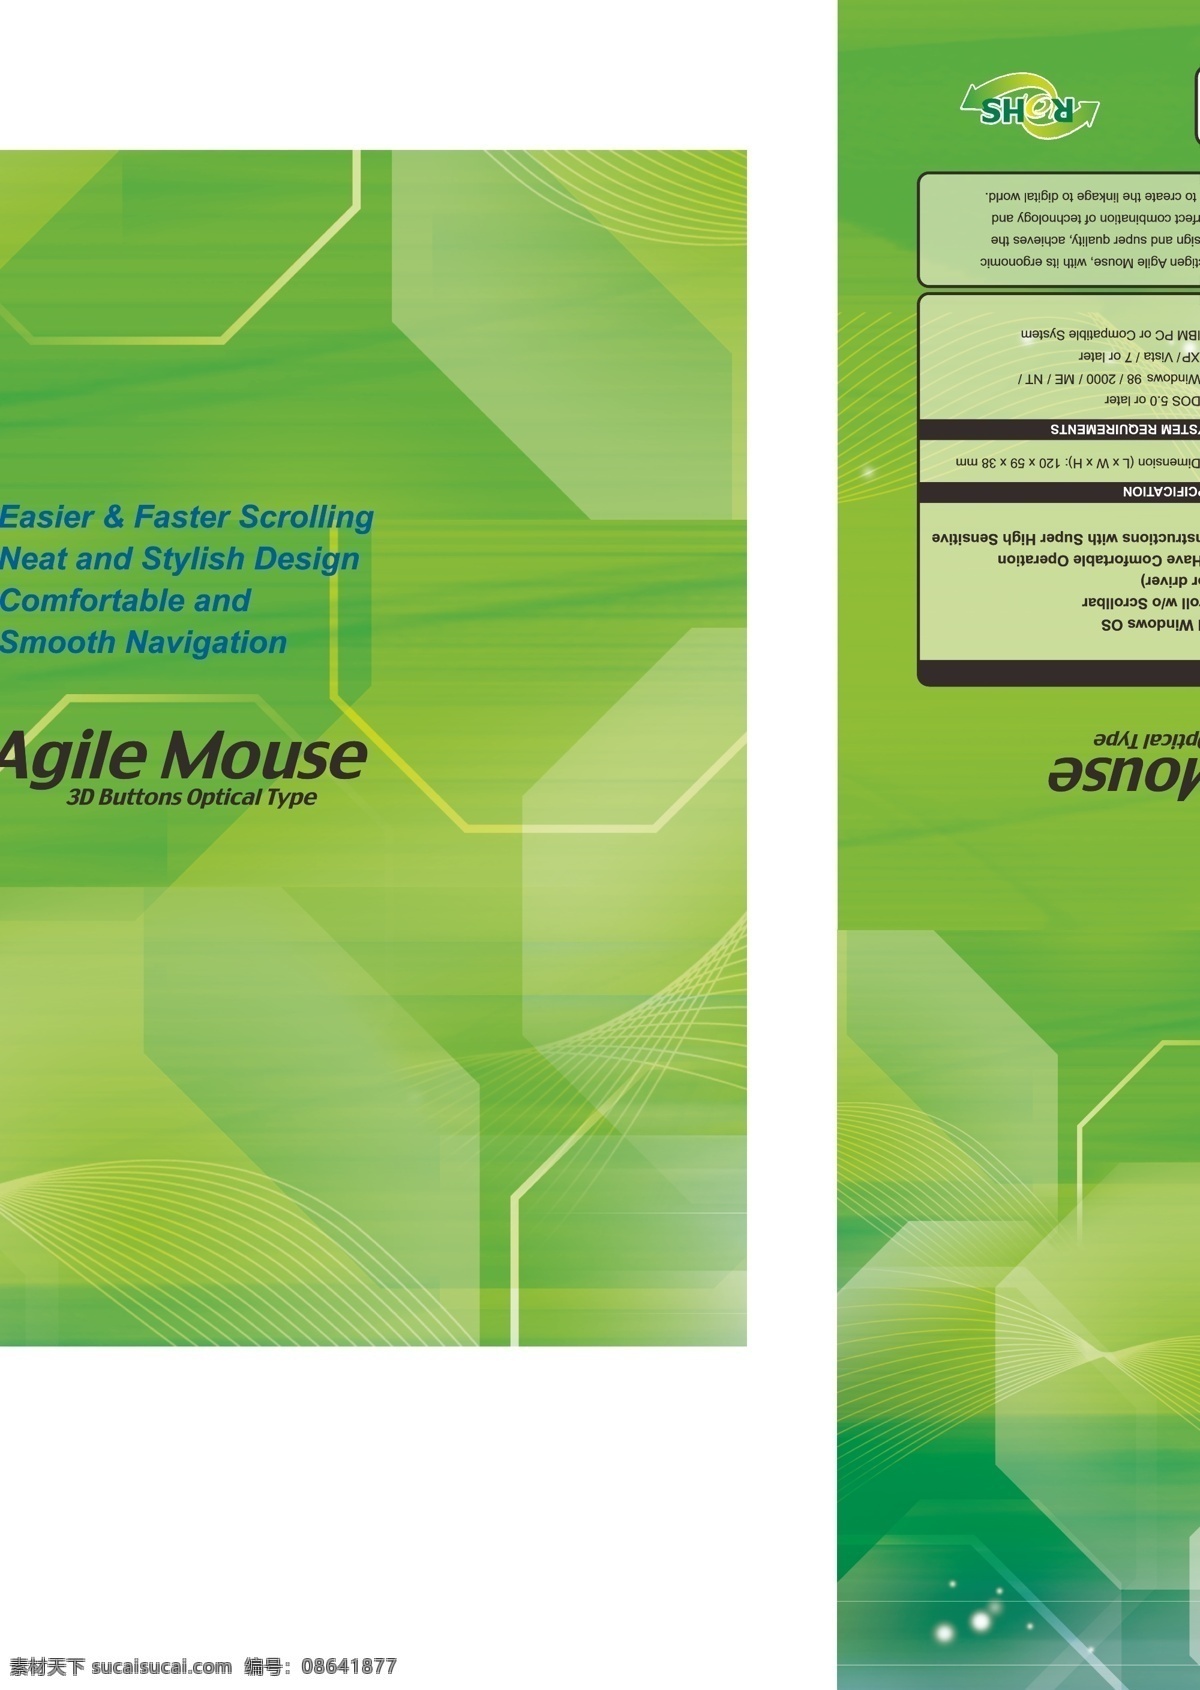 包装 包装设计 电脑鼠标 鼠标 鼠标包装 矢量 模板下载 无线鼠标 无线鼠标吊卡 鼠标彩卡 鼠标彩盒 鼠标吸塑彩卡 psd源文件